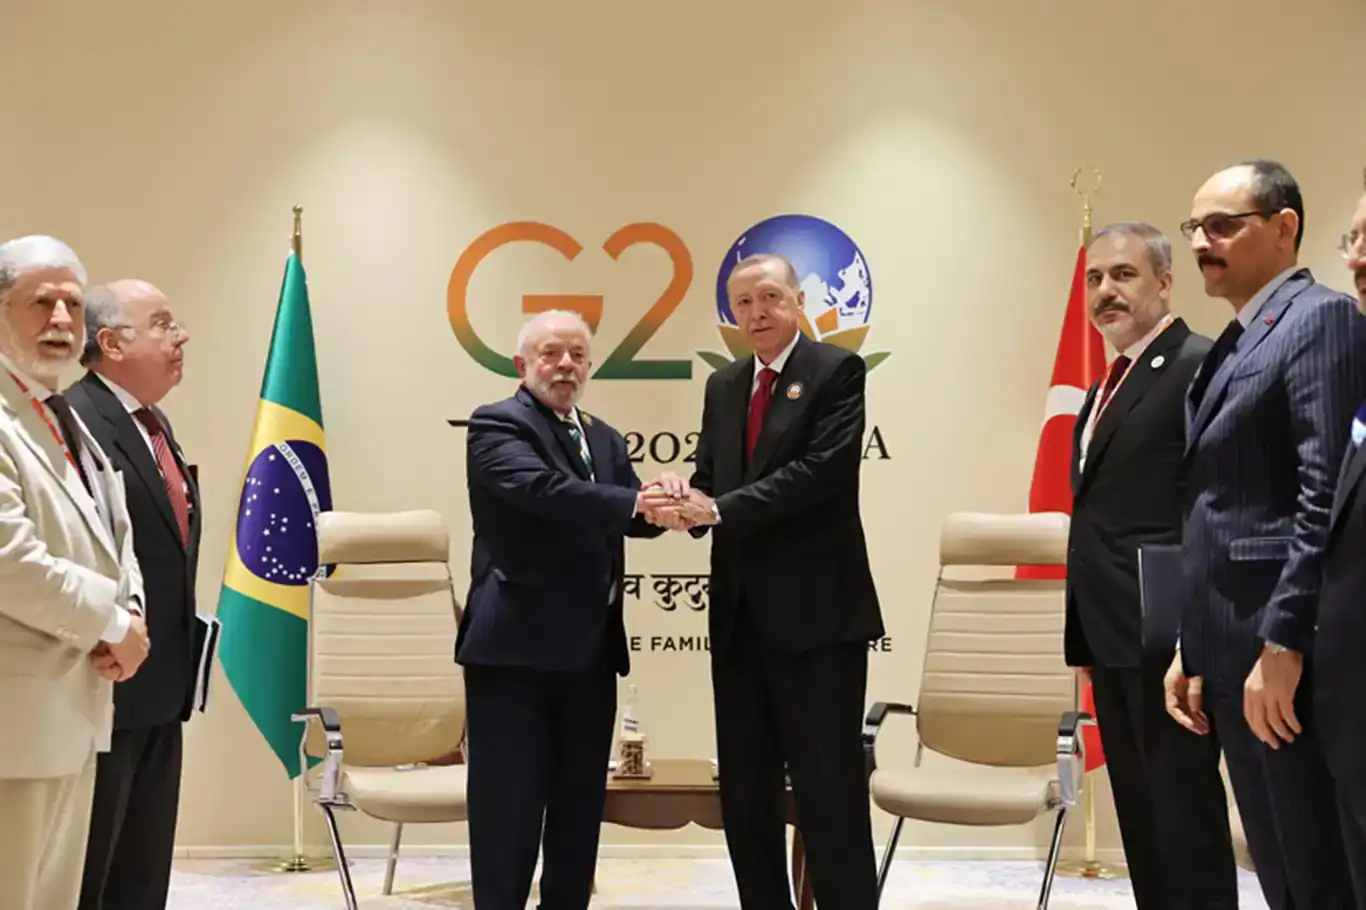 الرئيس أردوغان يلتقي بنظيره البرازيلي في إيطاليا